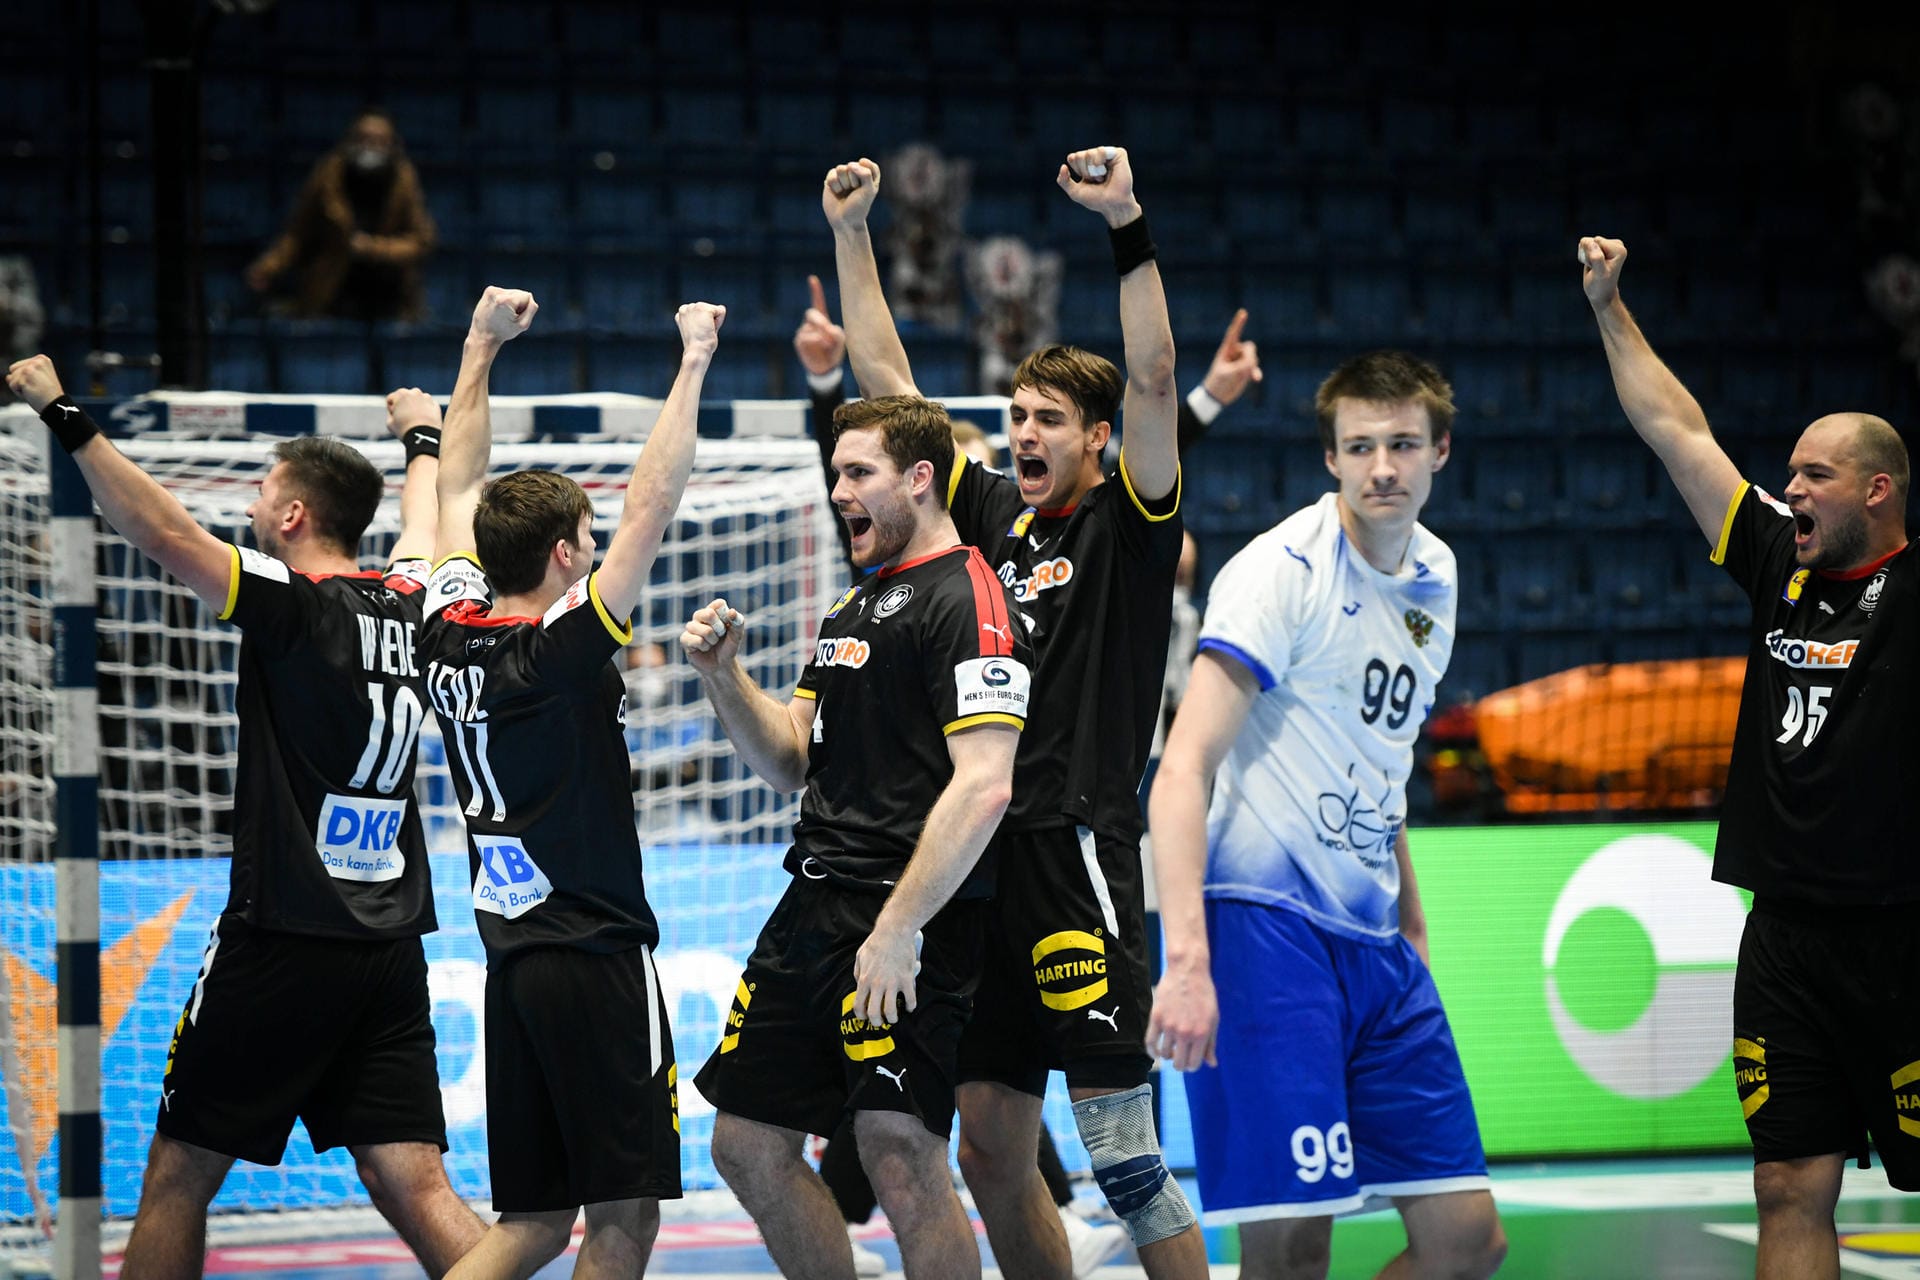 Die deutsche Handball-Nationalmannschaft hat sich mit einem Sieg von der Europameisterschaft verabschiedet. Beim knappen Erfolg gegen Russland wussten zwei Stars jedoch so gar nicht zu überzeugen. Die Einzelkritik.